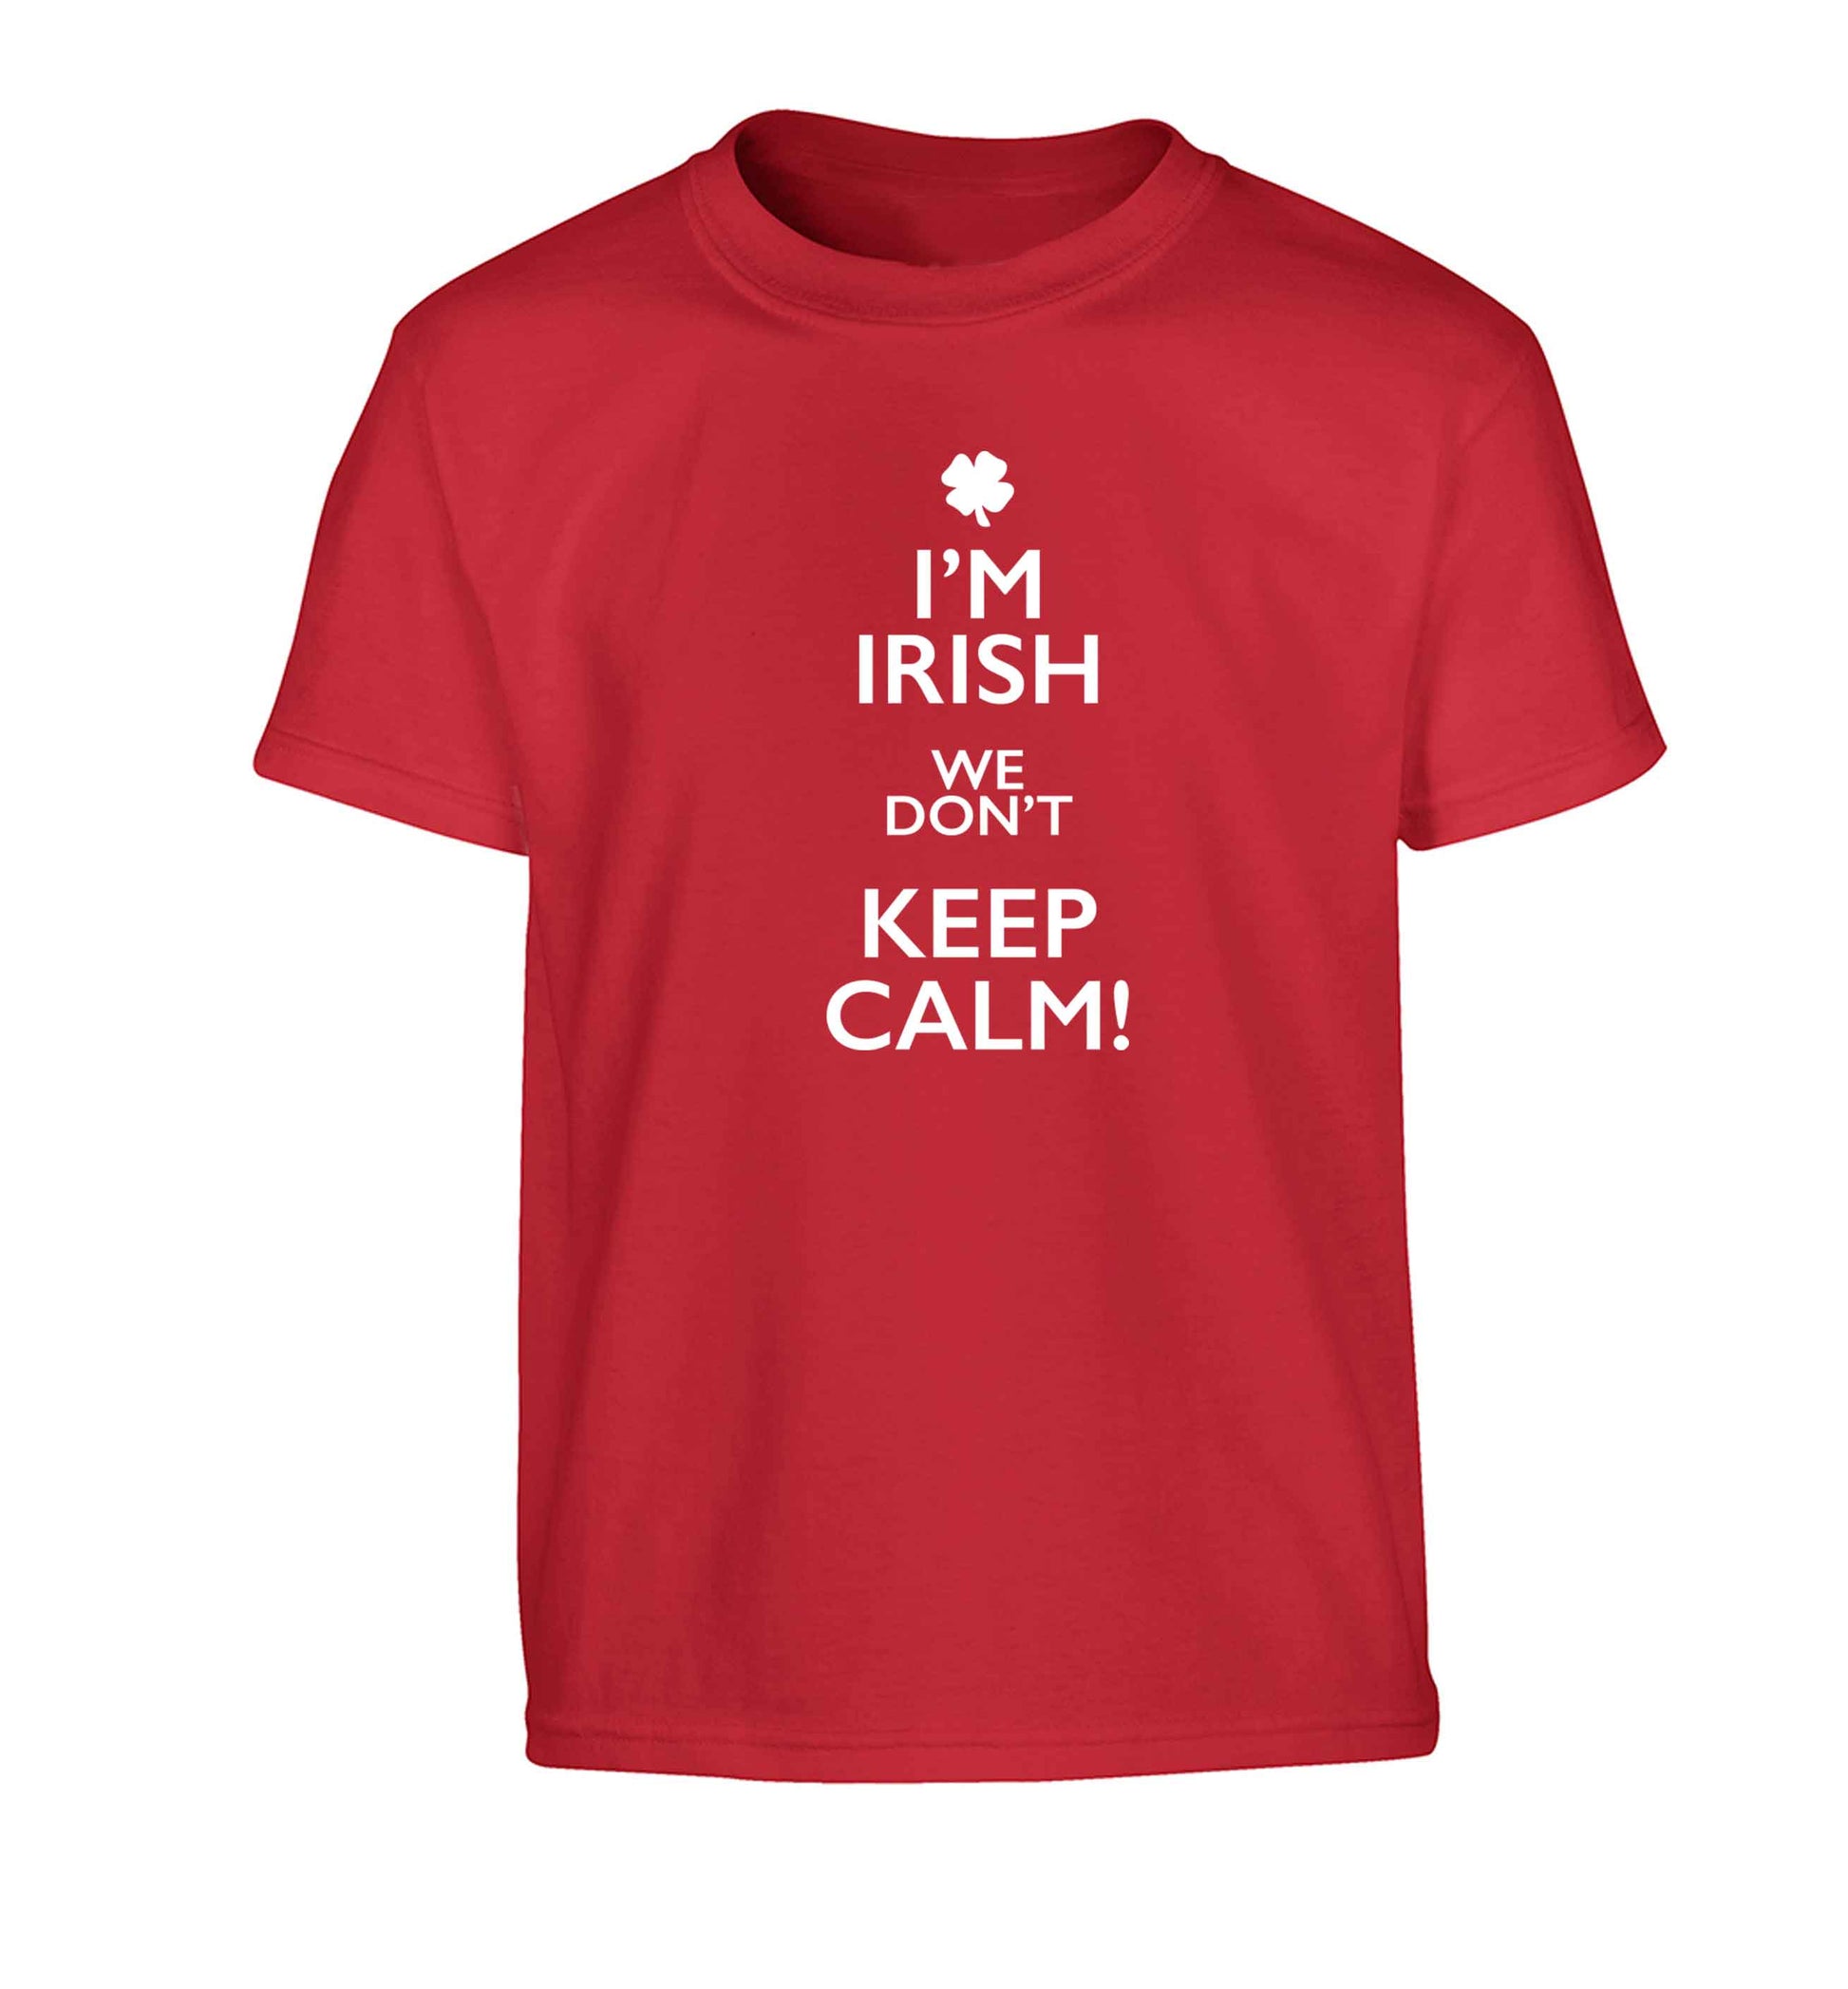 I'm Irish we don't keep calm Children's red Tshirt 12-13 Years